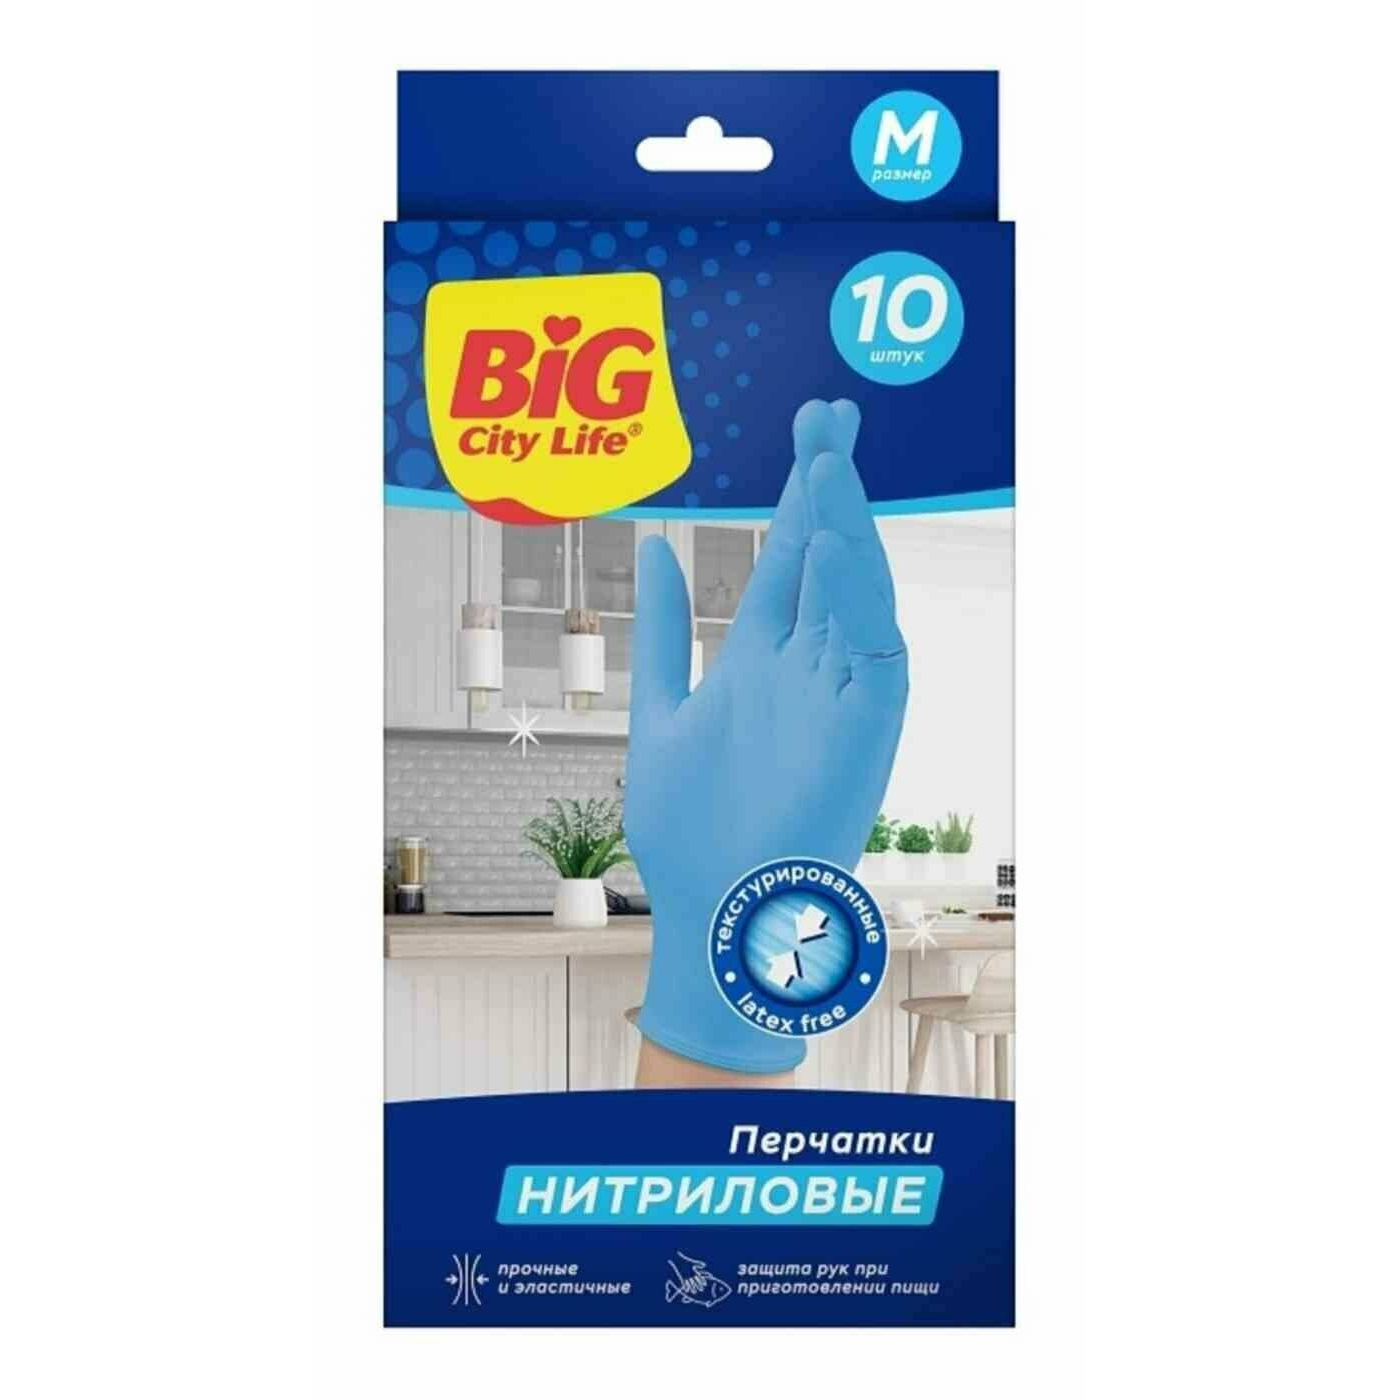 Перчатки Big City Life нитриловые синие M 10 шт нитриловые перчатки с твердым манжетом пара